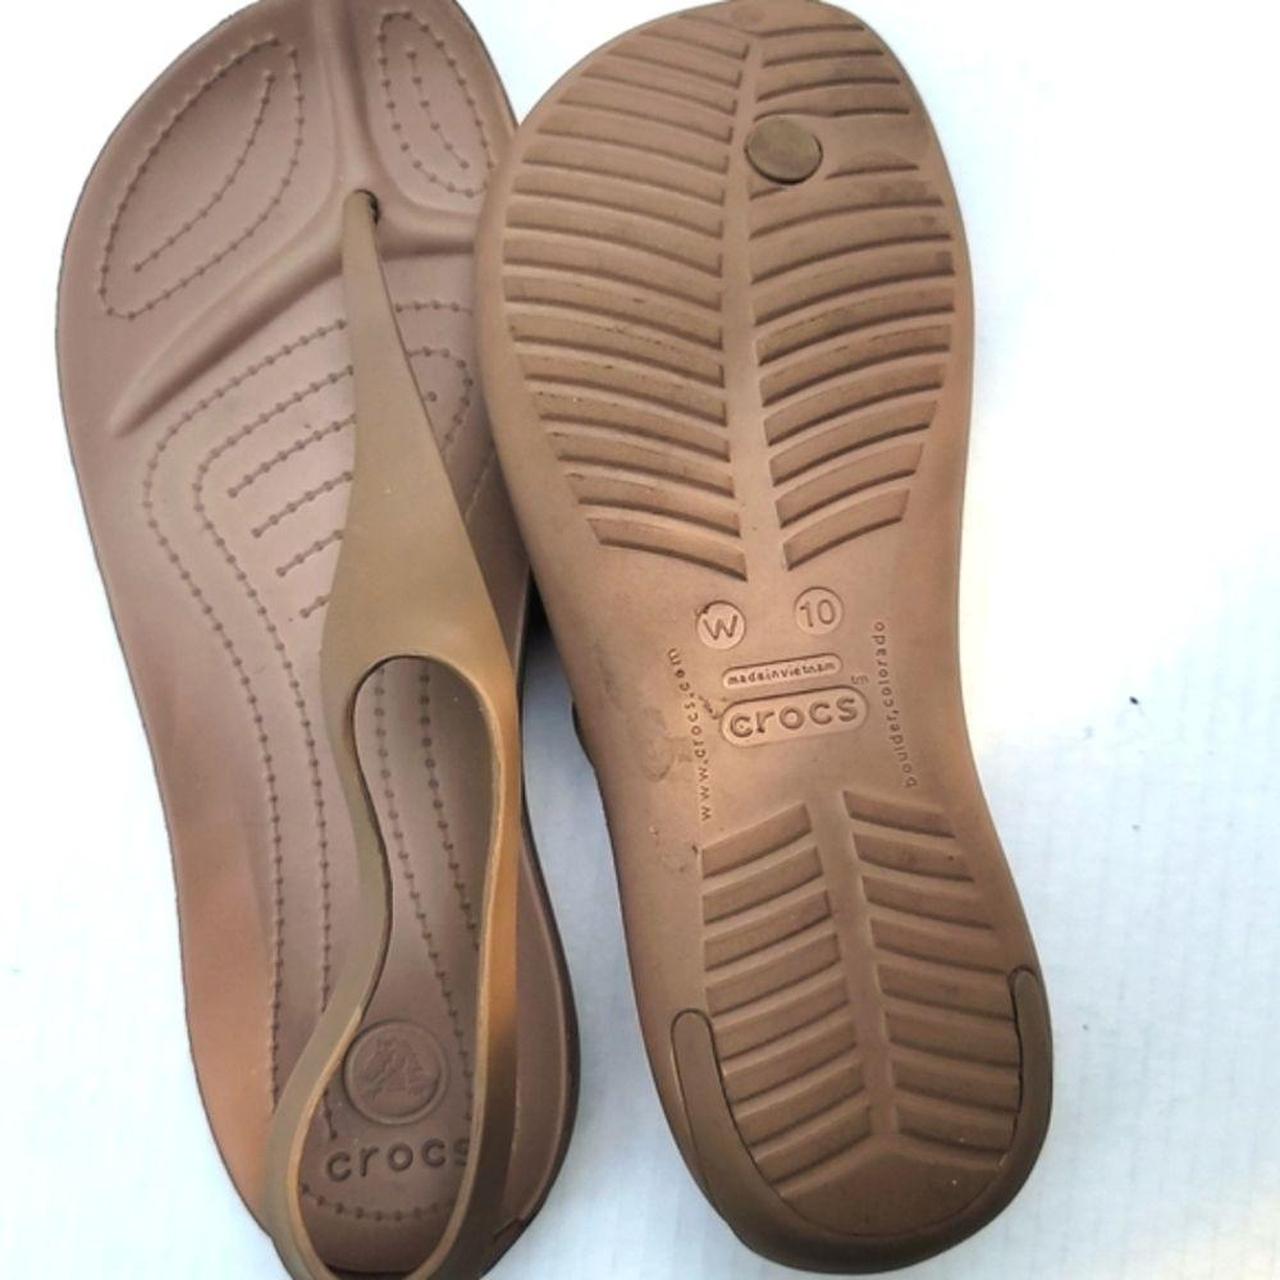 Product Image 4 - Crocs sexiankle flip flop sandals